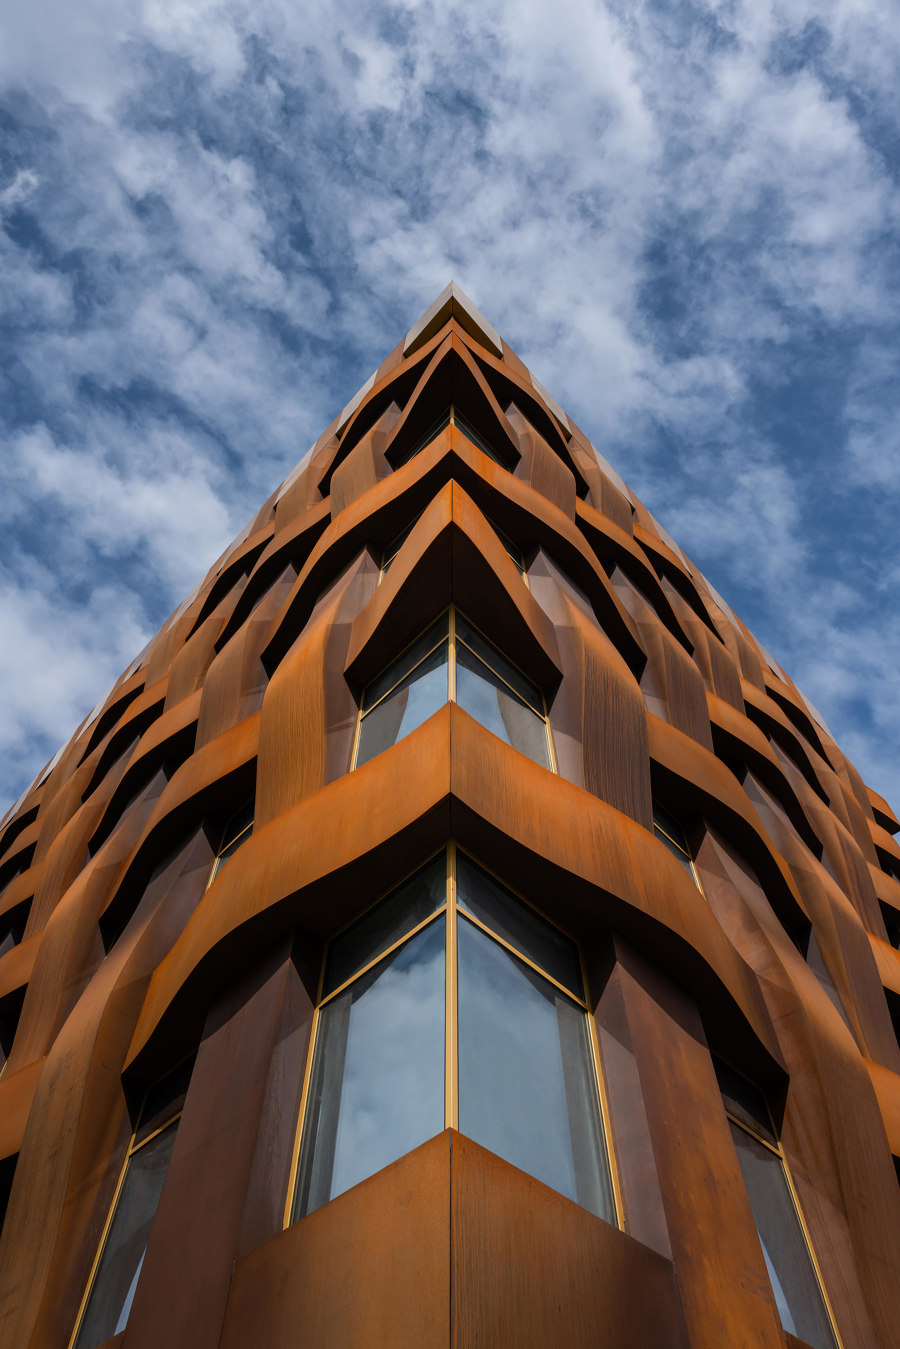 Industrielles Design an modernen Fassaden | Aktuelles